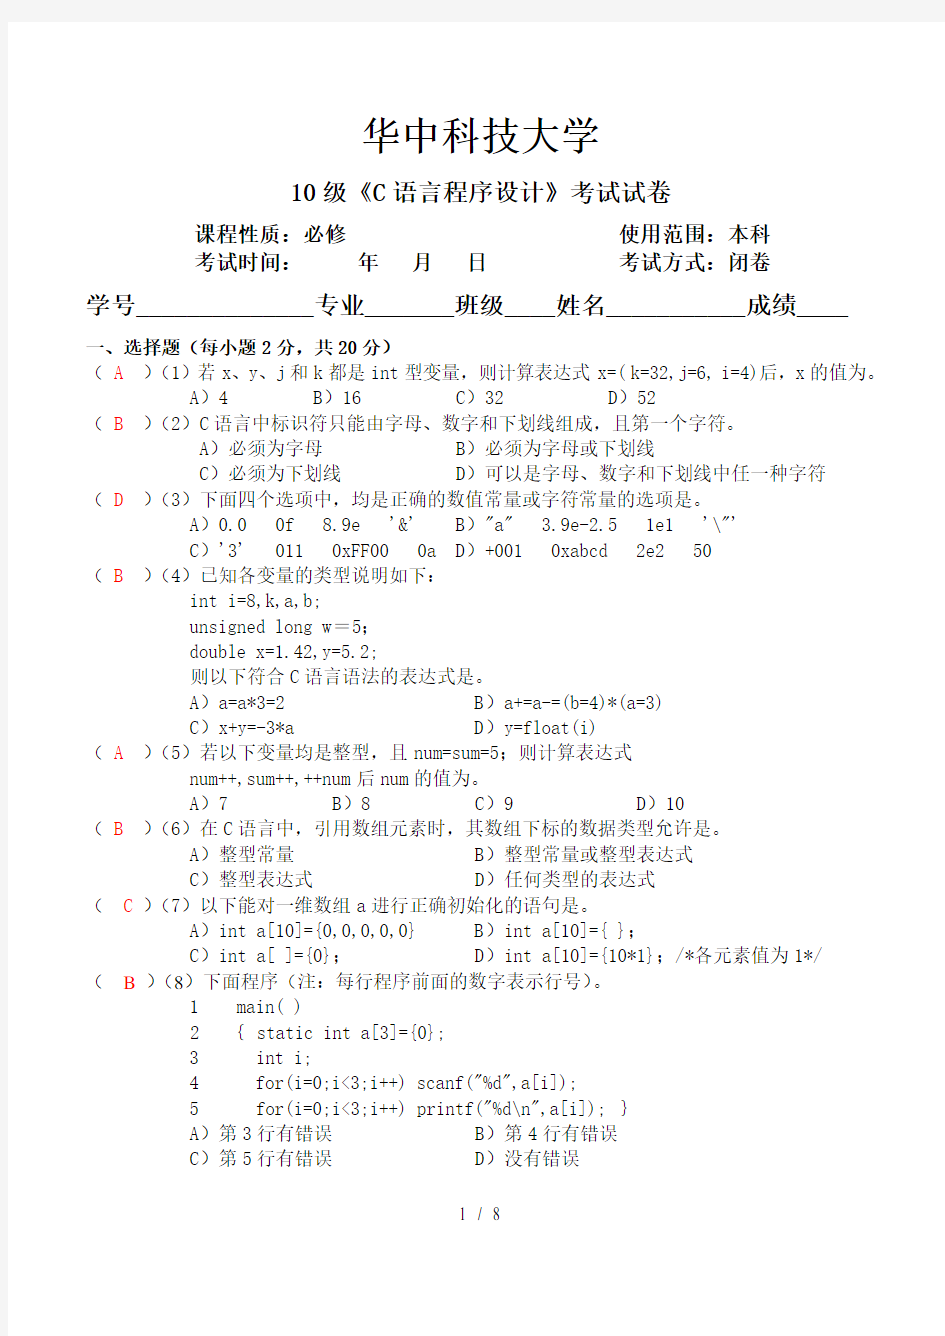 华中科技大学级C语言程序设计考试经典试卷复习资料